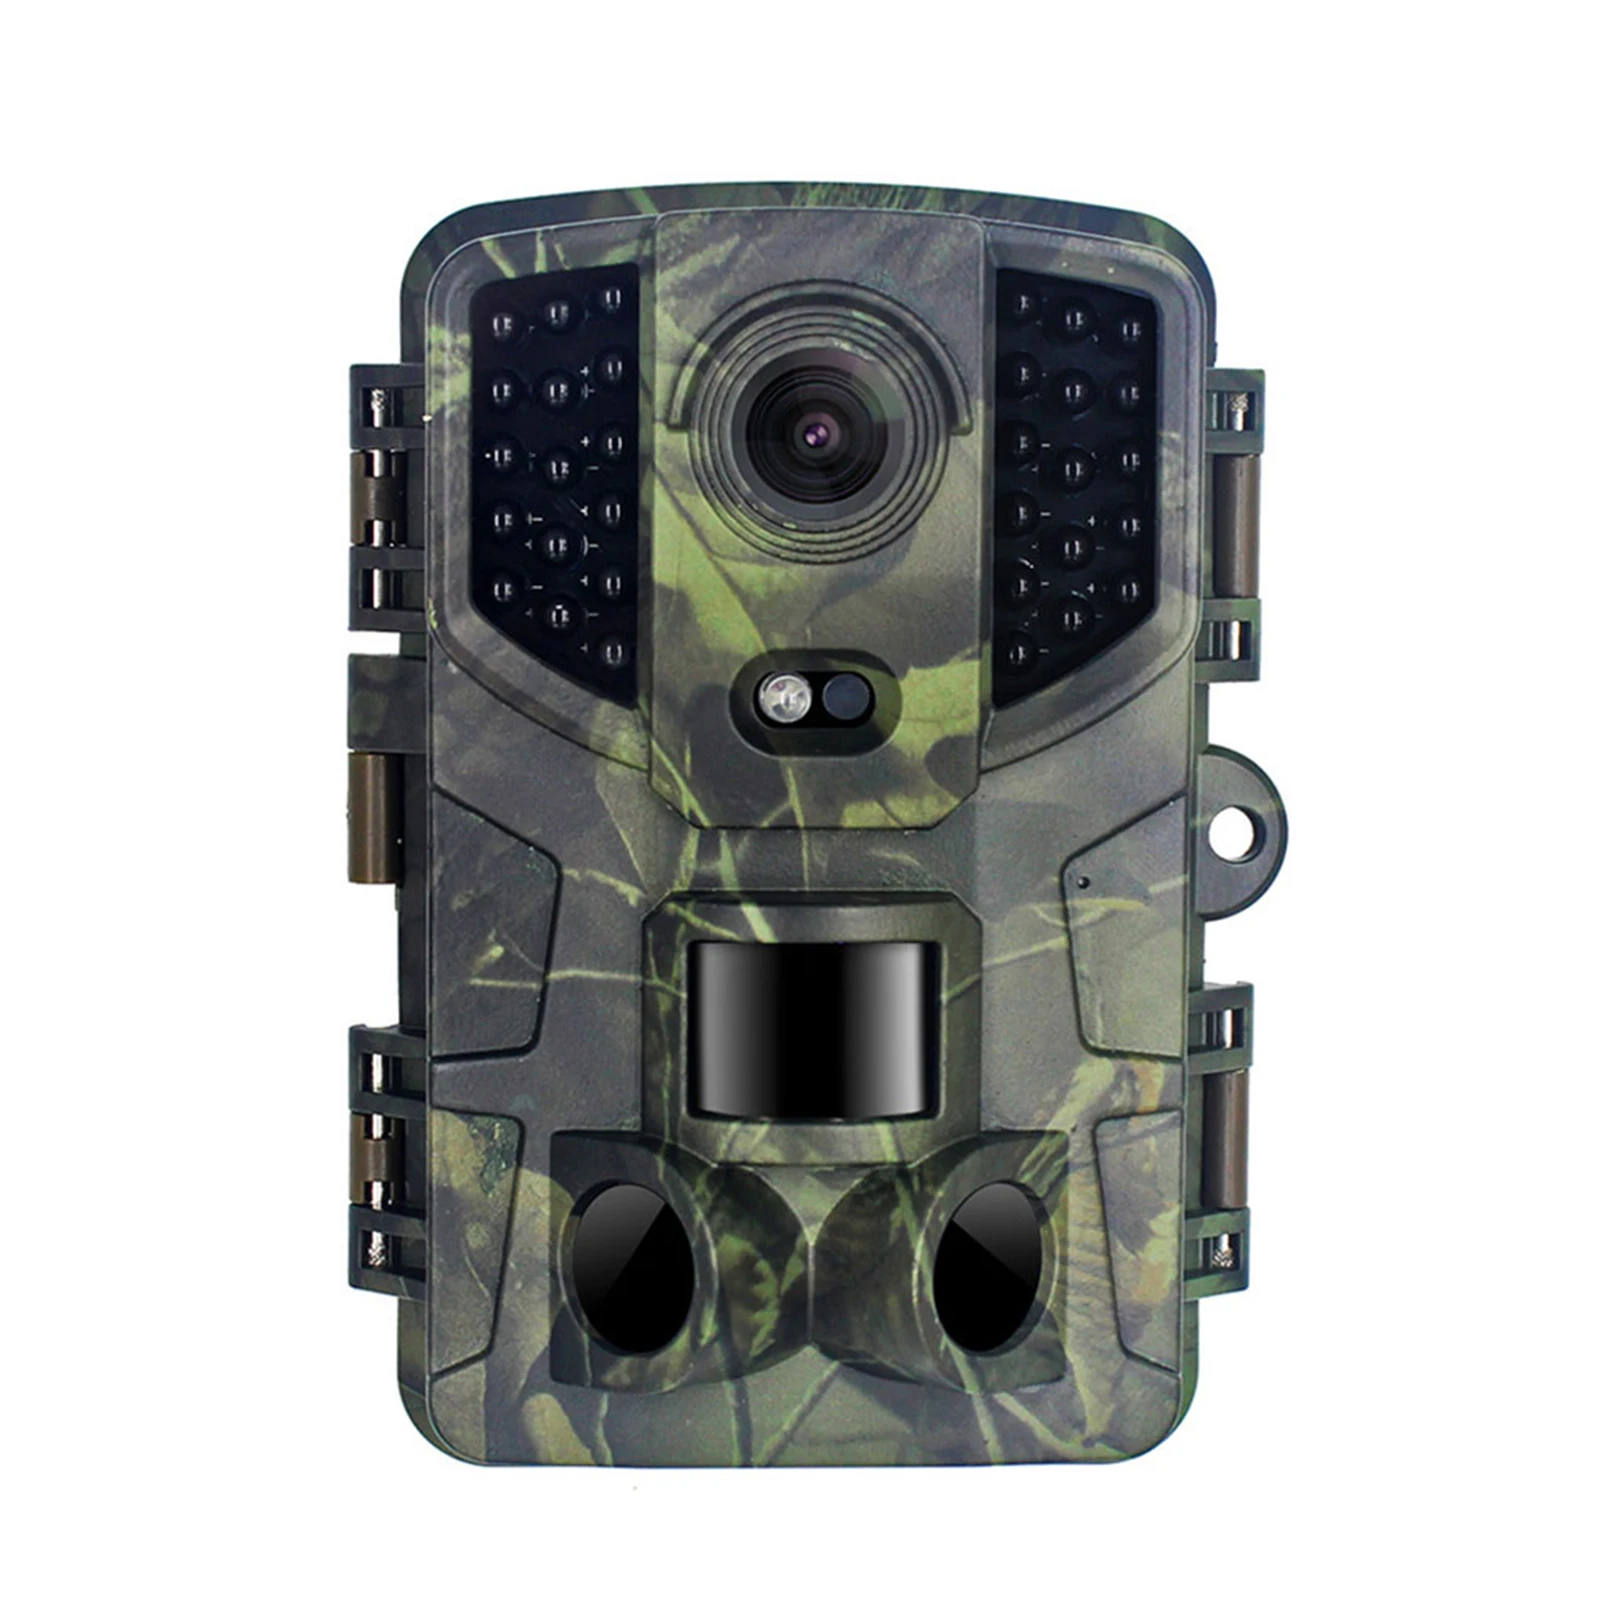 

Outdoor Mini Trail Camera Waterproof Rainproof Dustproof Animal Camera for Wildlife Watching Deer Scouting